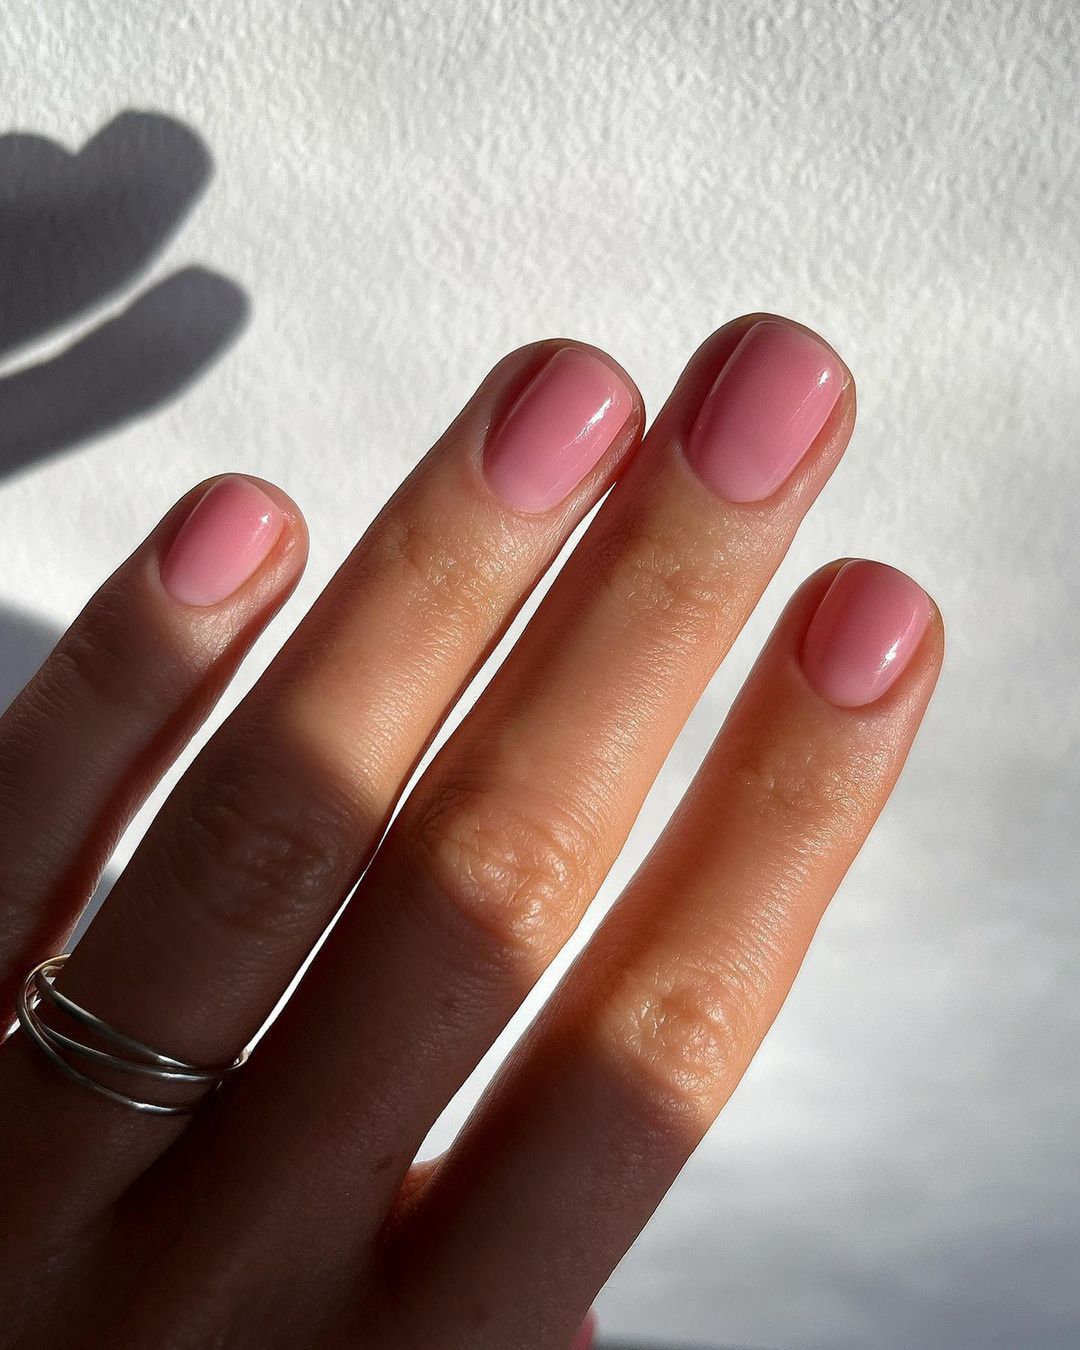 Cielisty manicure wysmukla optycznie dłonie i odmładza wygląd dojrzałej skóry 